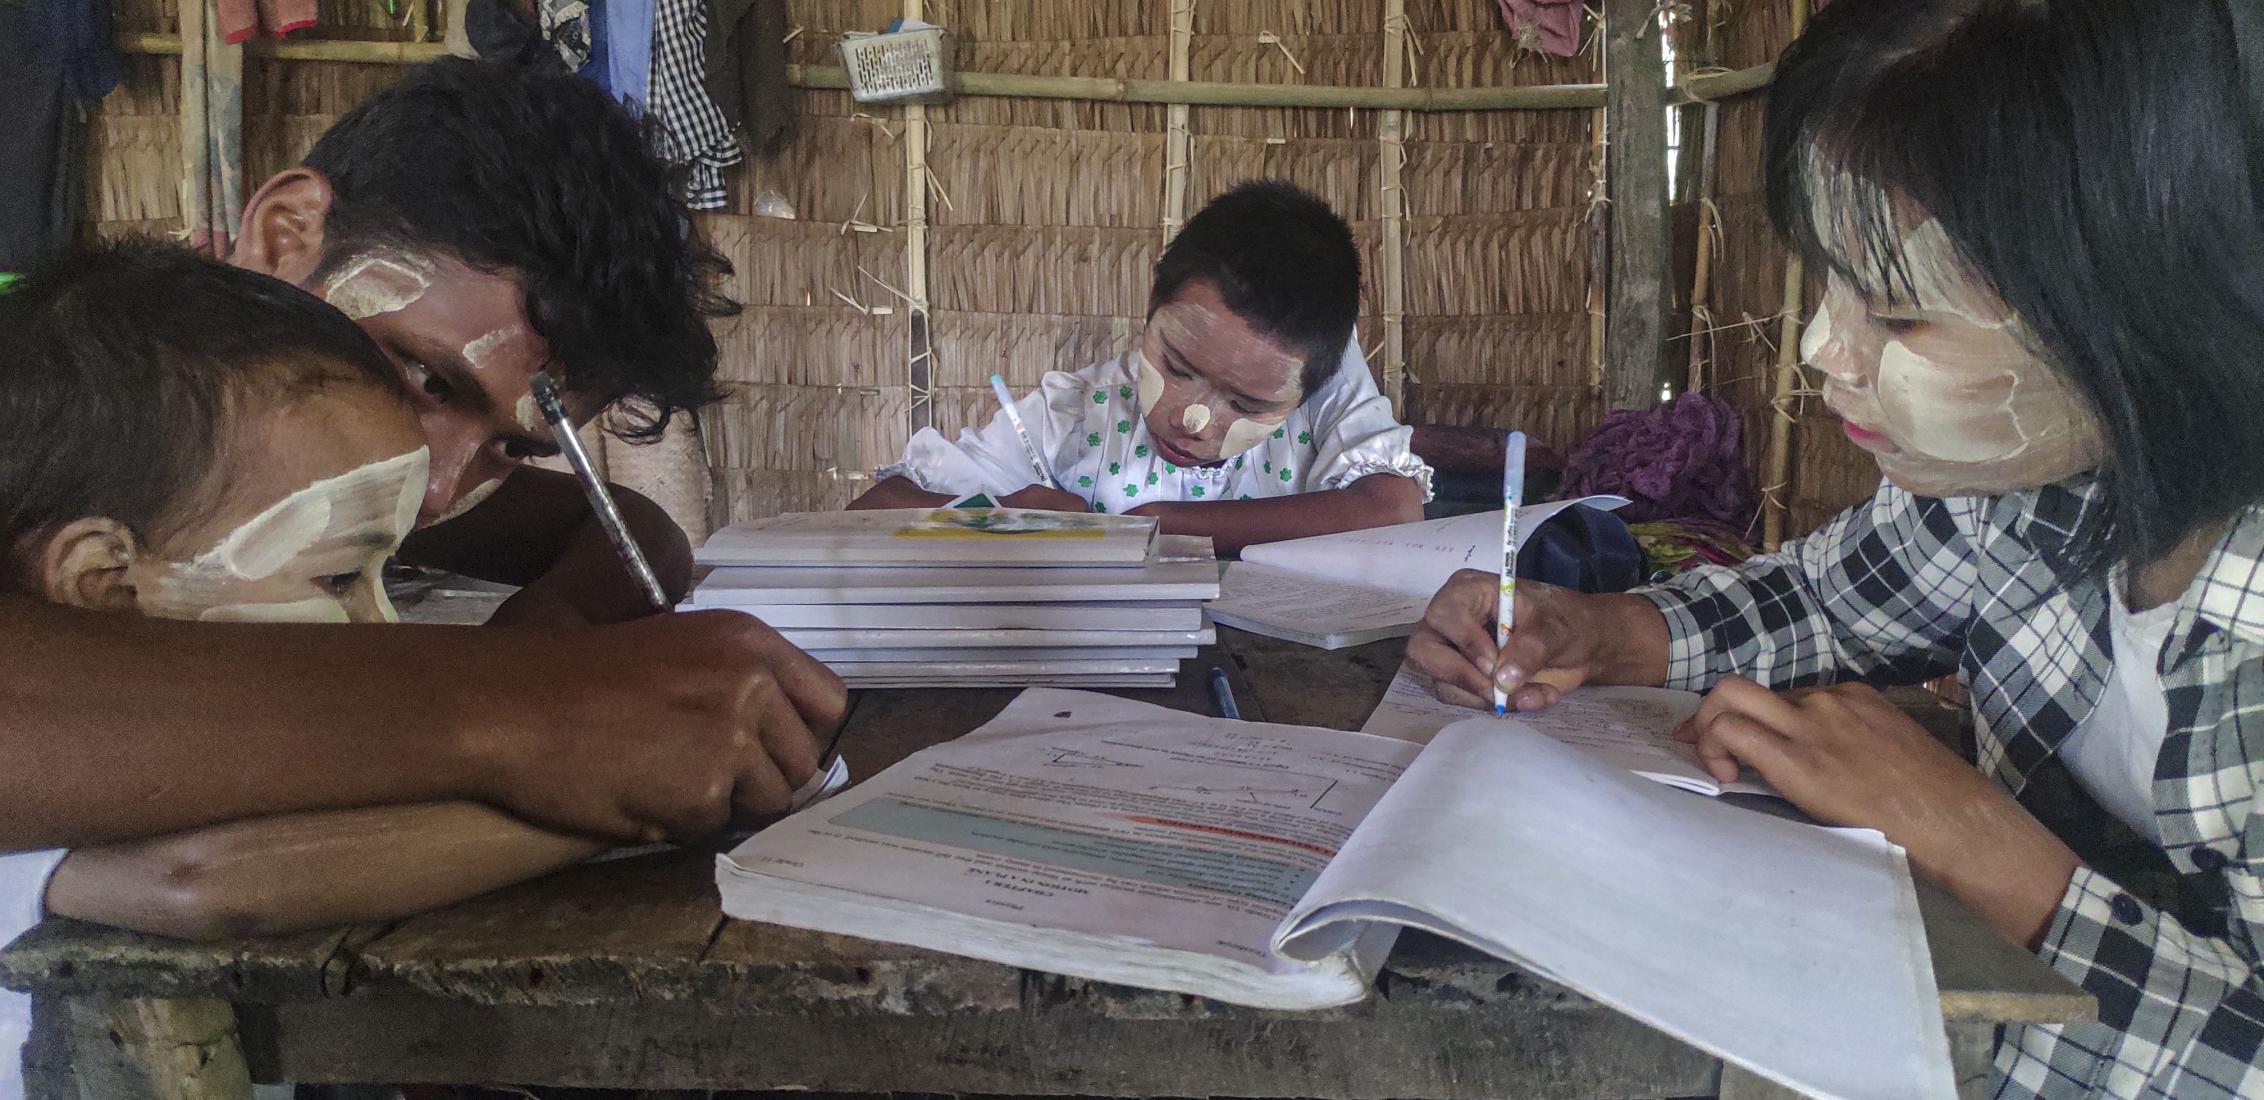 ©World Vision International  Dans le Myanmar touché par le conflit, Myo a abandonné l'école pour travailler dans une ferme afin de subvenir aux besoins de sa famille. À la ferme, il travaillait de longues heures, portait des charges dangereusement lourdes, sans possibilité d'apprentissage ni de temps libre. Myo fait maintenant partie d'un programme de gestion des cas de protection de l'enfance de World Vision International. Grâce à ce soutien complet et individualisé, il suit maintenant un programme de form